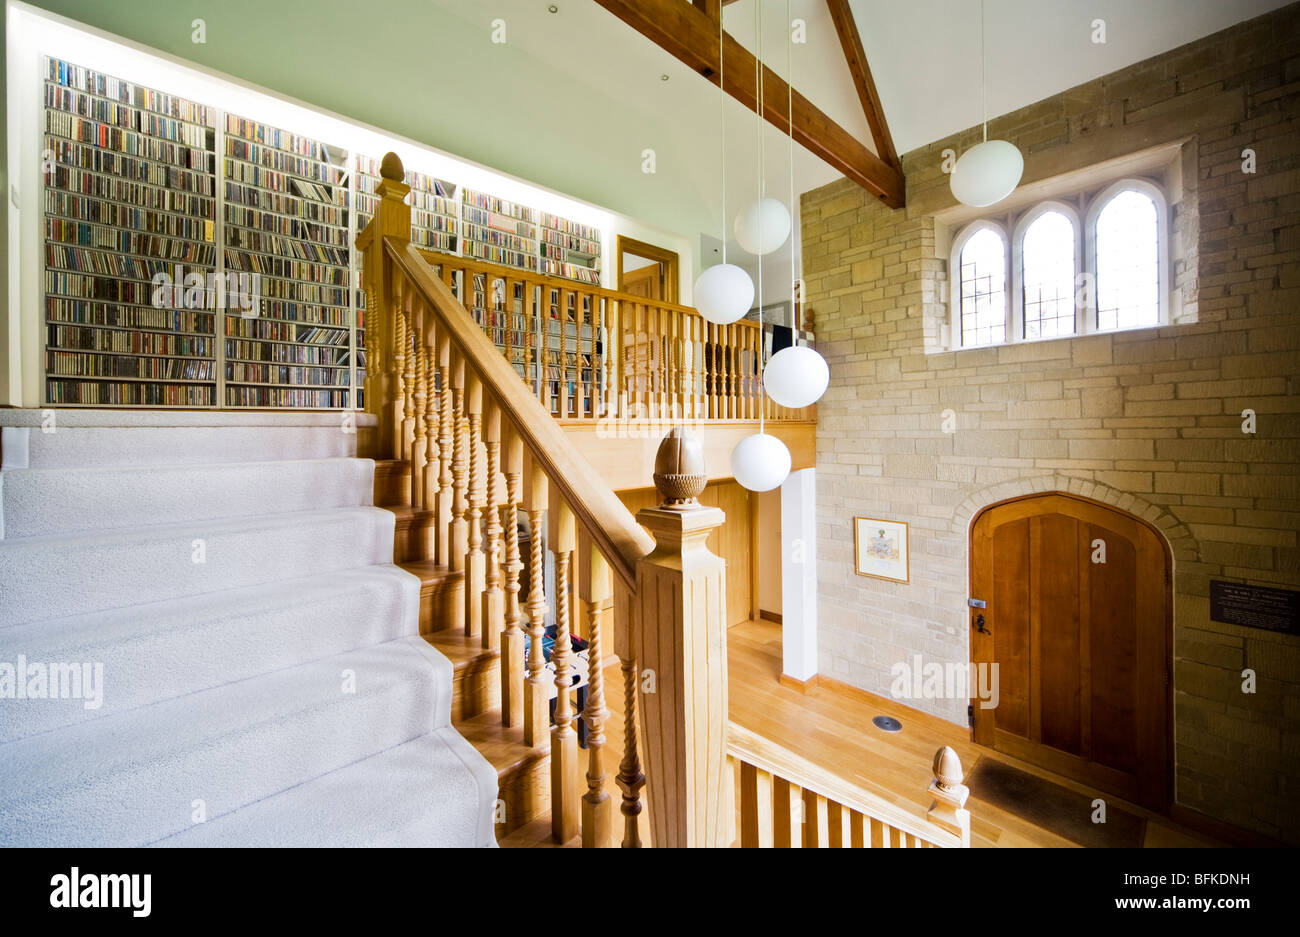 Escalier et couloir d'une maison de campagne anglaise contemporaine et moderne hôtel particulier ou manor au Royaume-Uni Banque D'Images